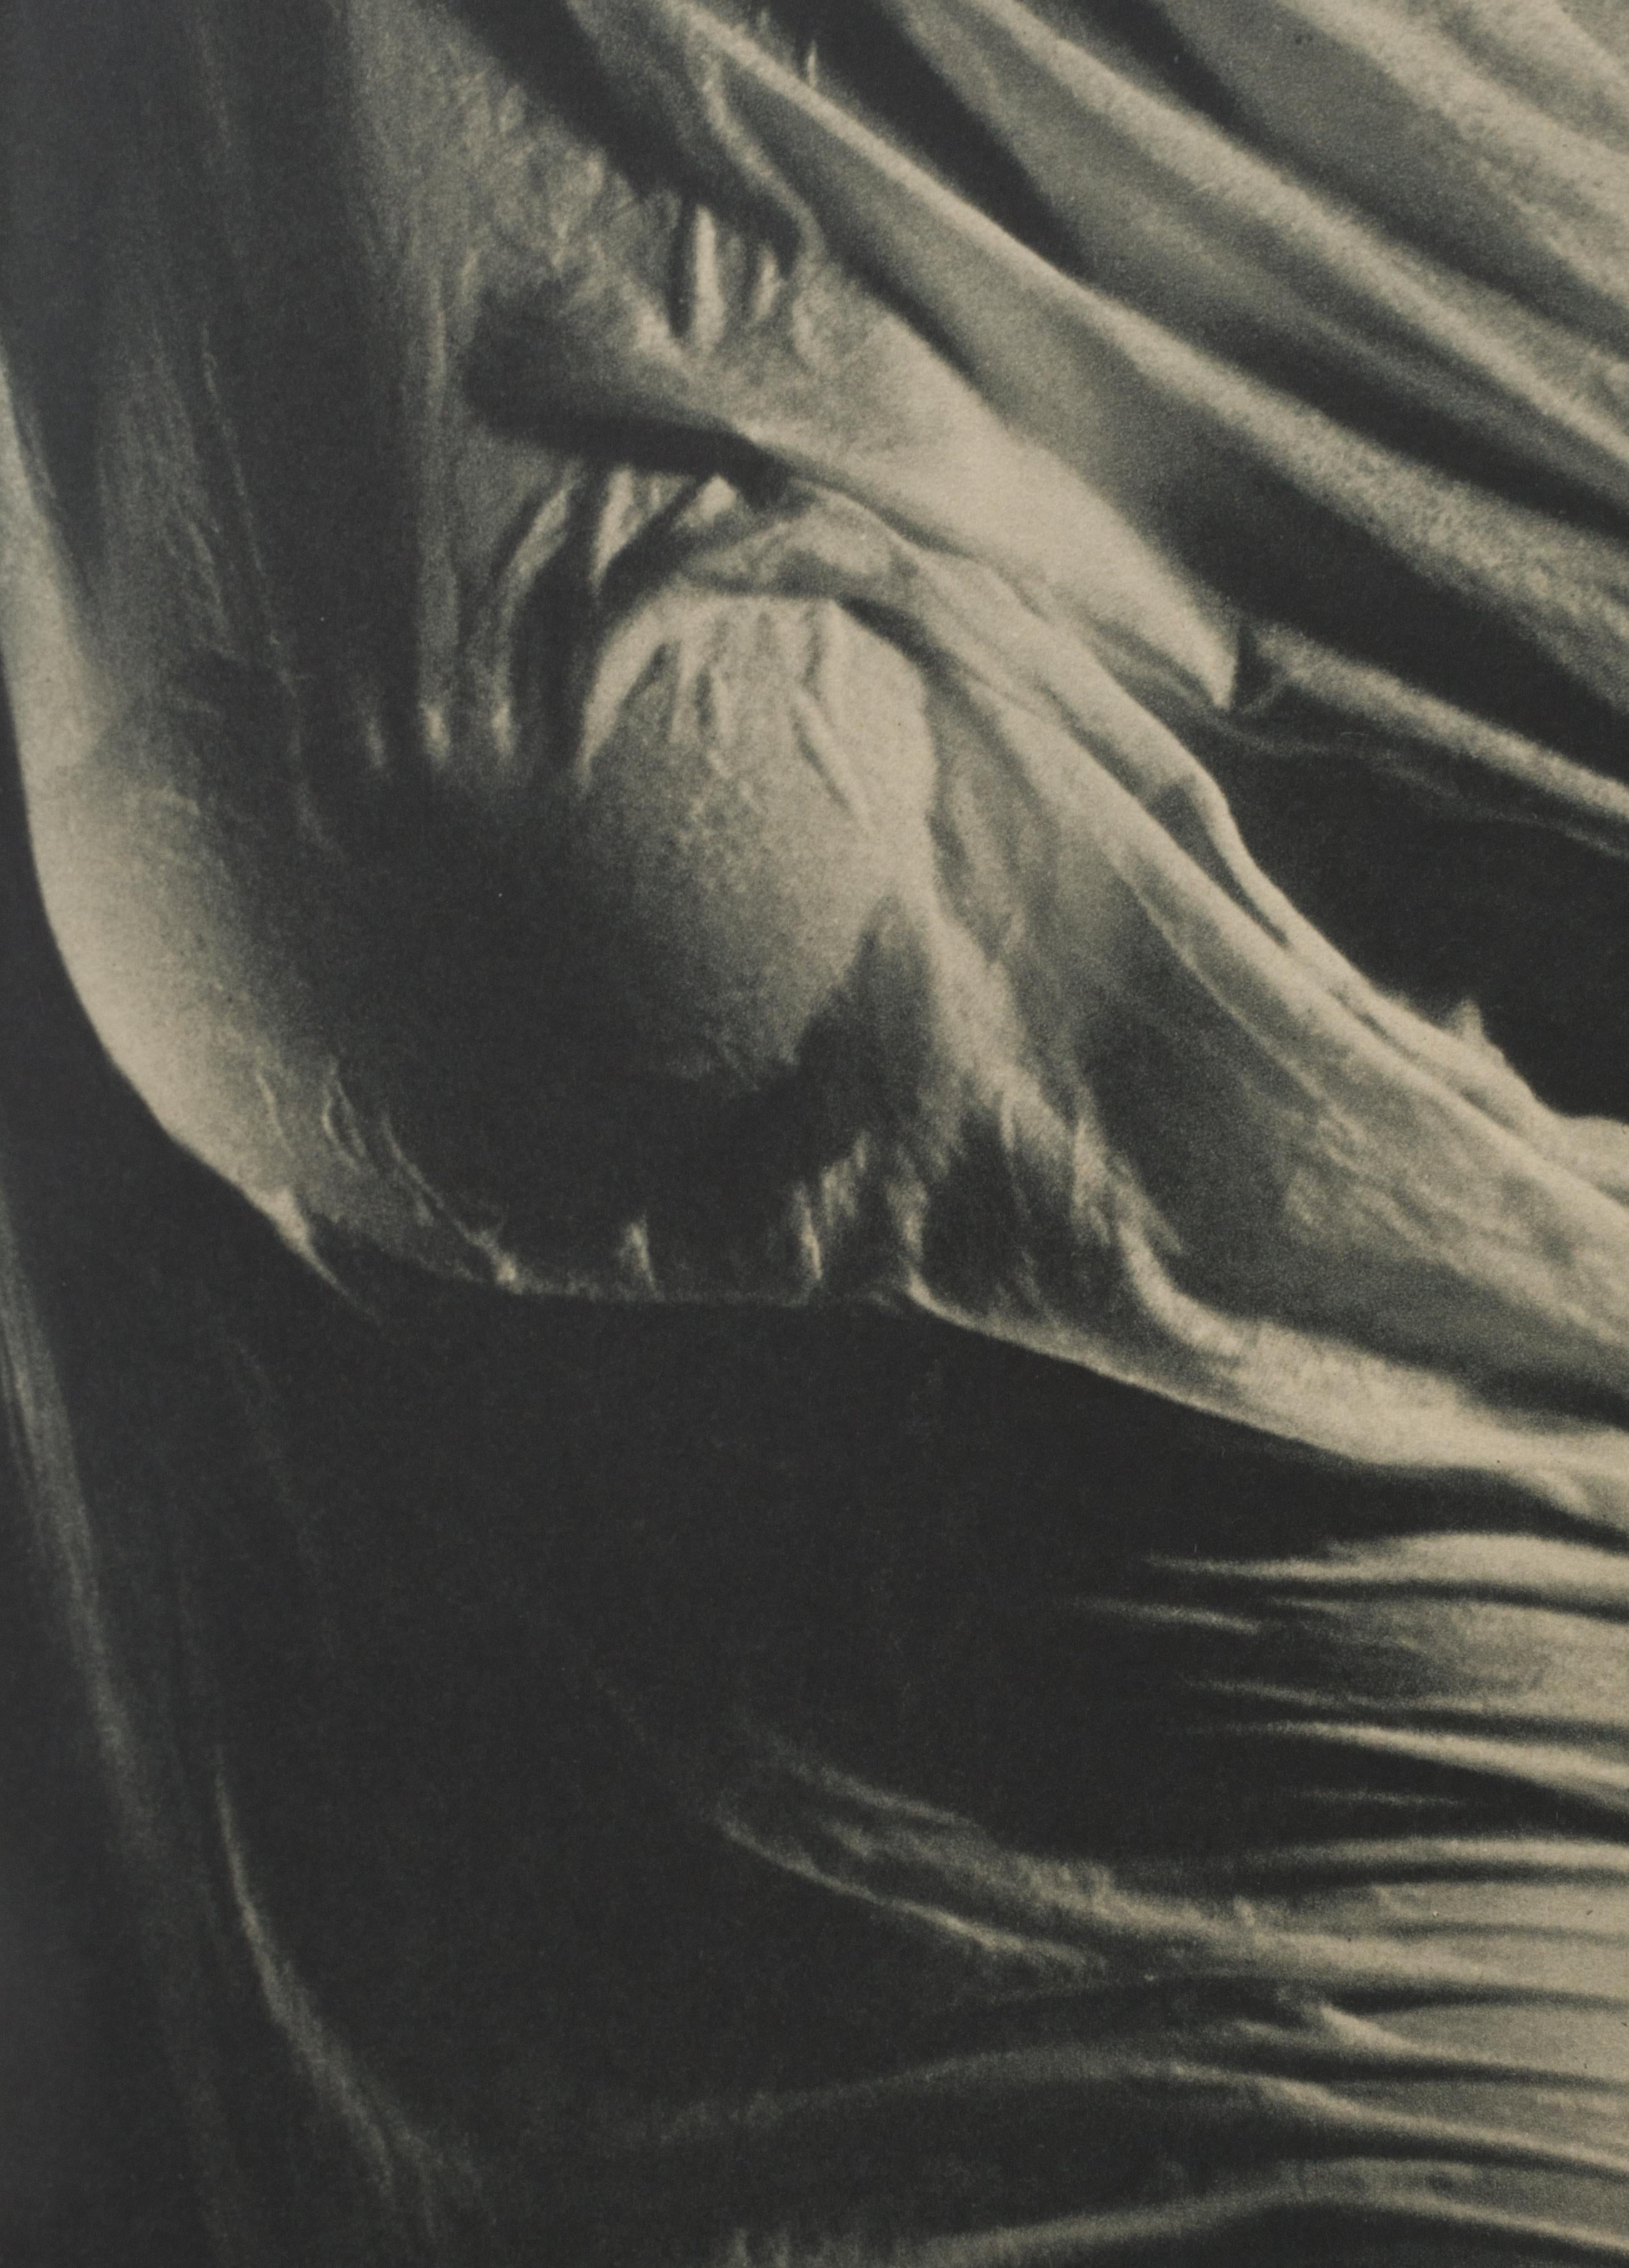 Wet Silk - Photograph by Ruth Bernhard